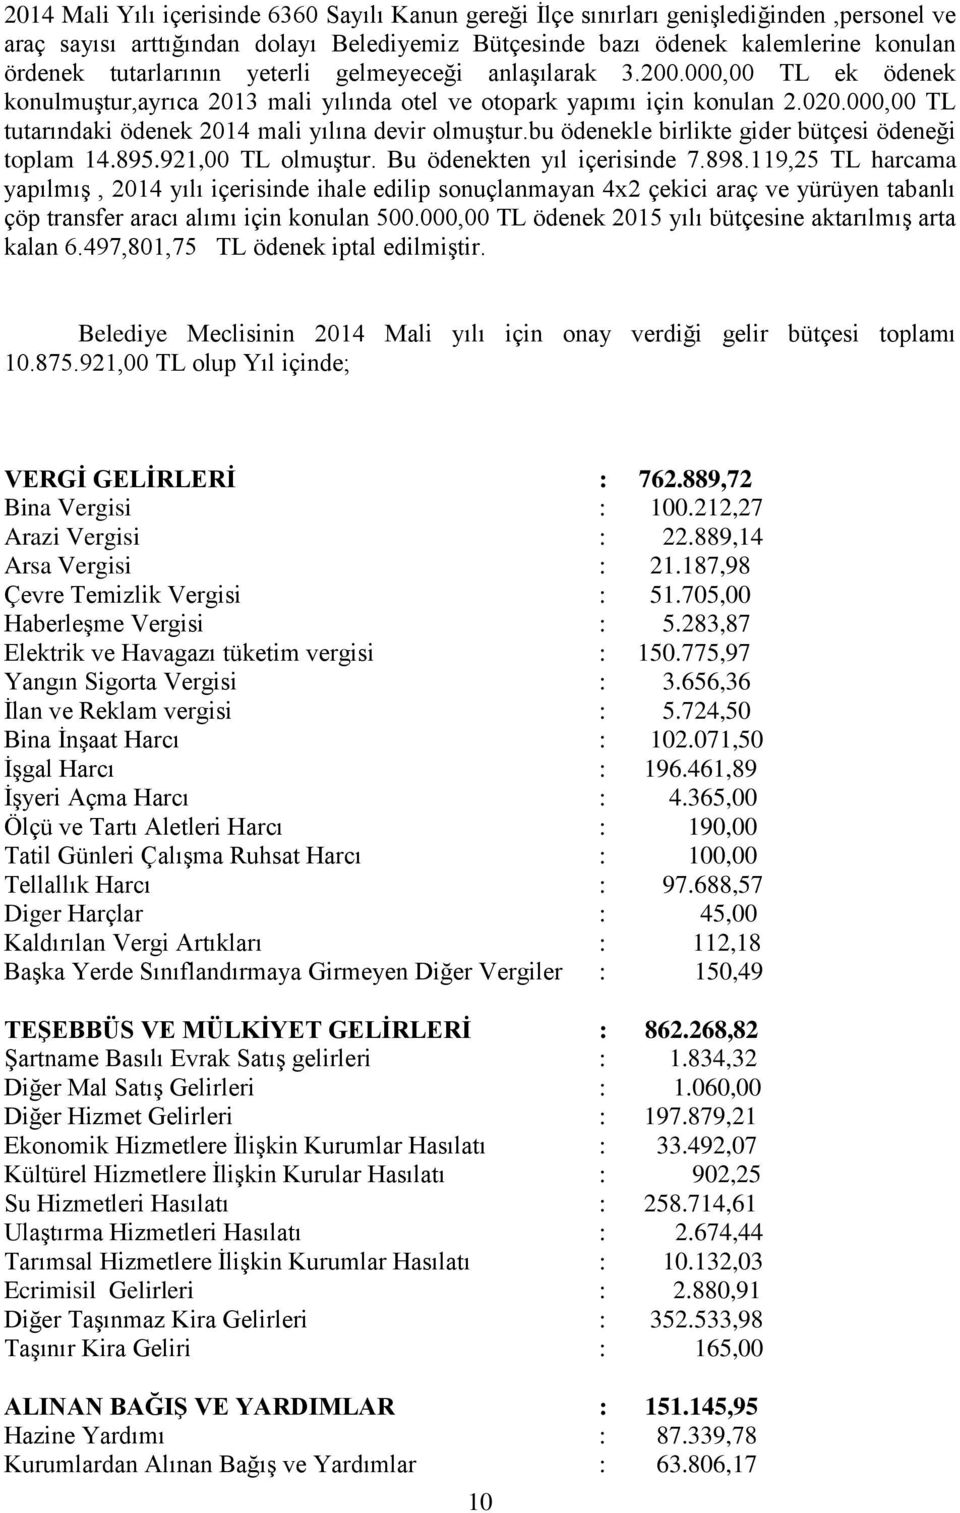 000,00 TL tutarındaki ödenek 2014 mali yılına devir olmuştur.bu ödenekle birlikte gider bütçesi ödeneği toplam 14.895.921,00 TL olmuştur. Bu ödenekten yıl içerisinde 7.898.